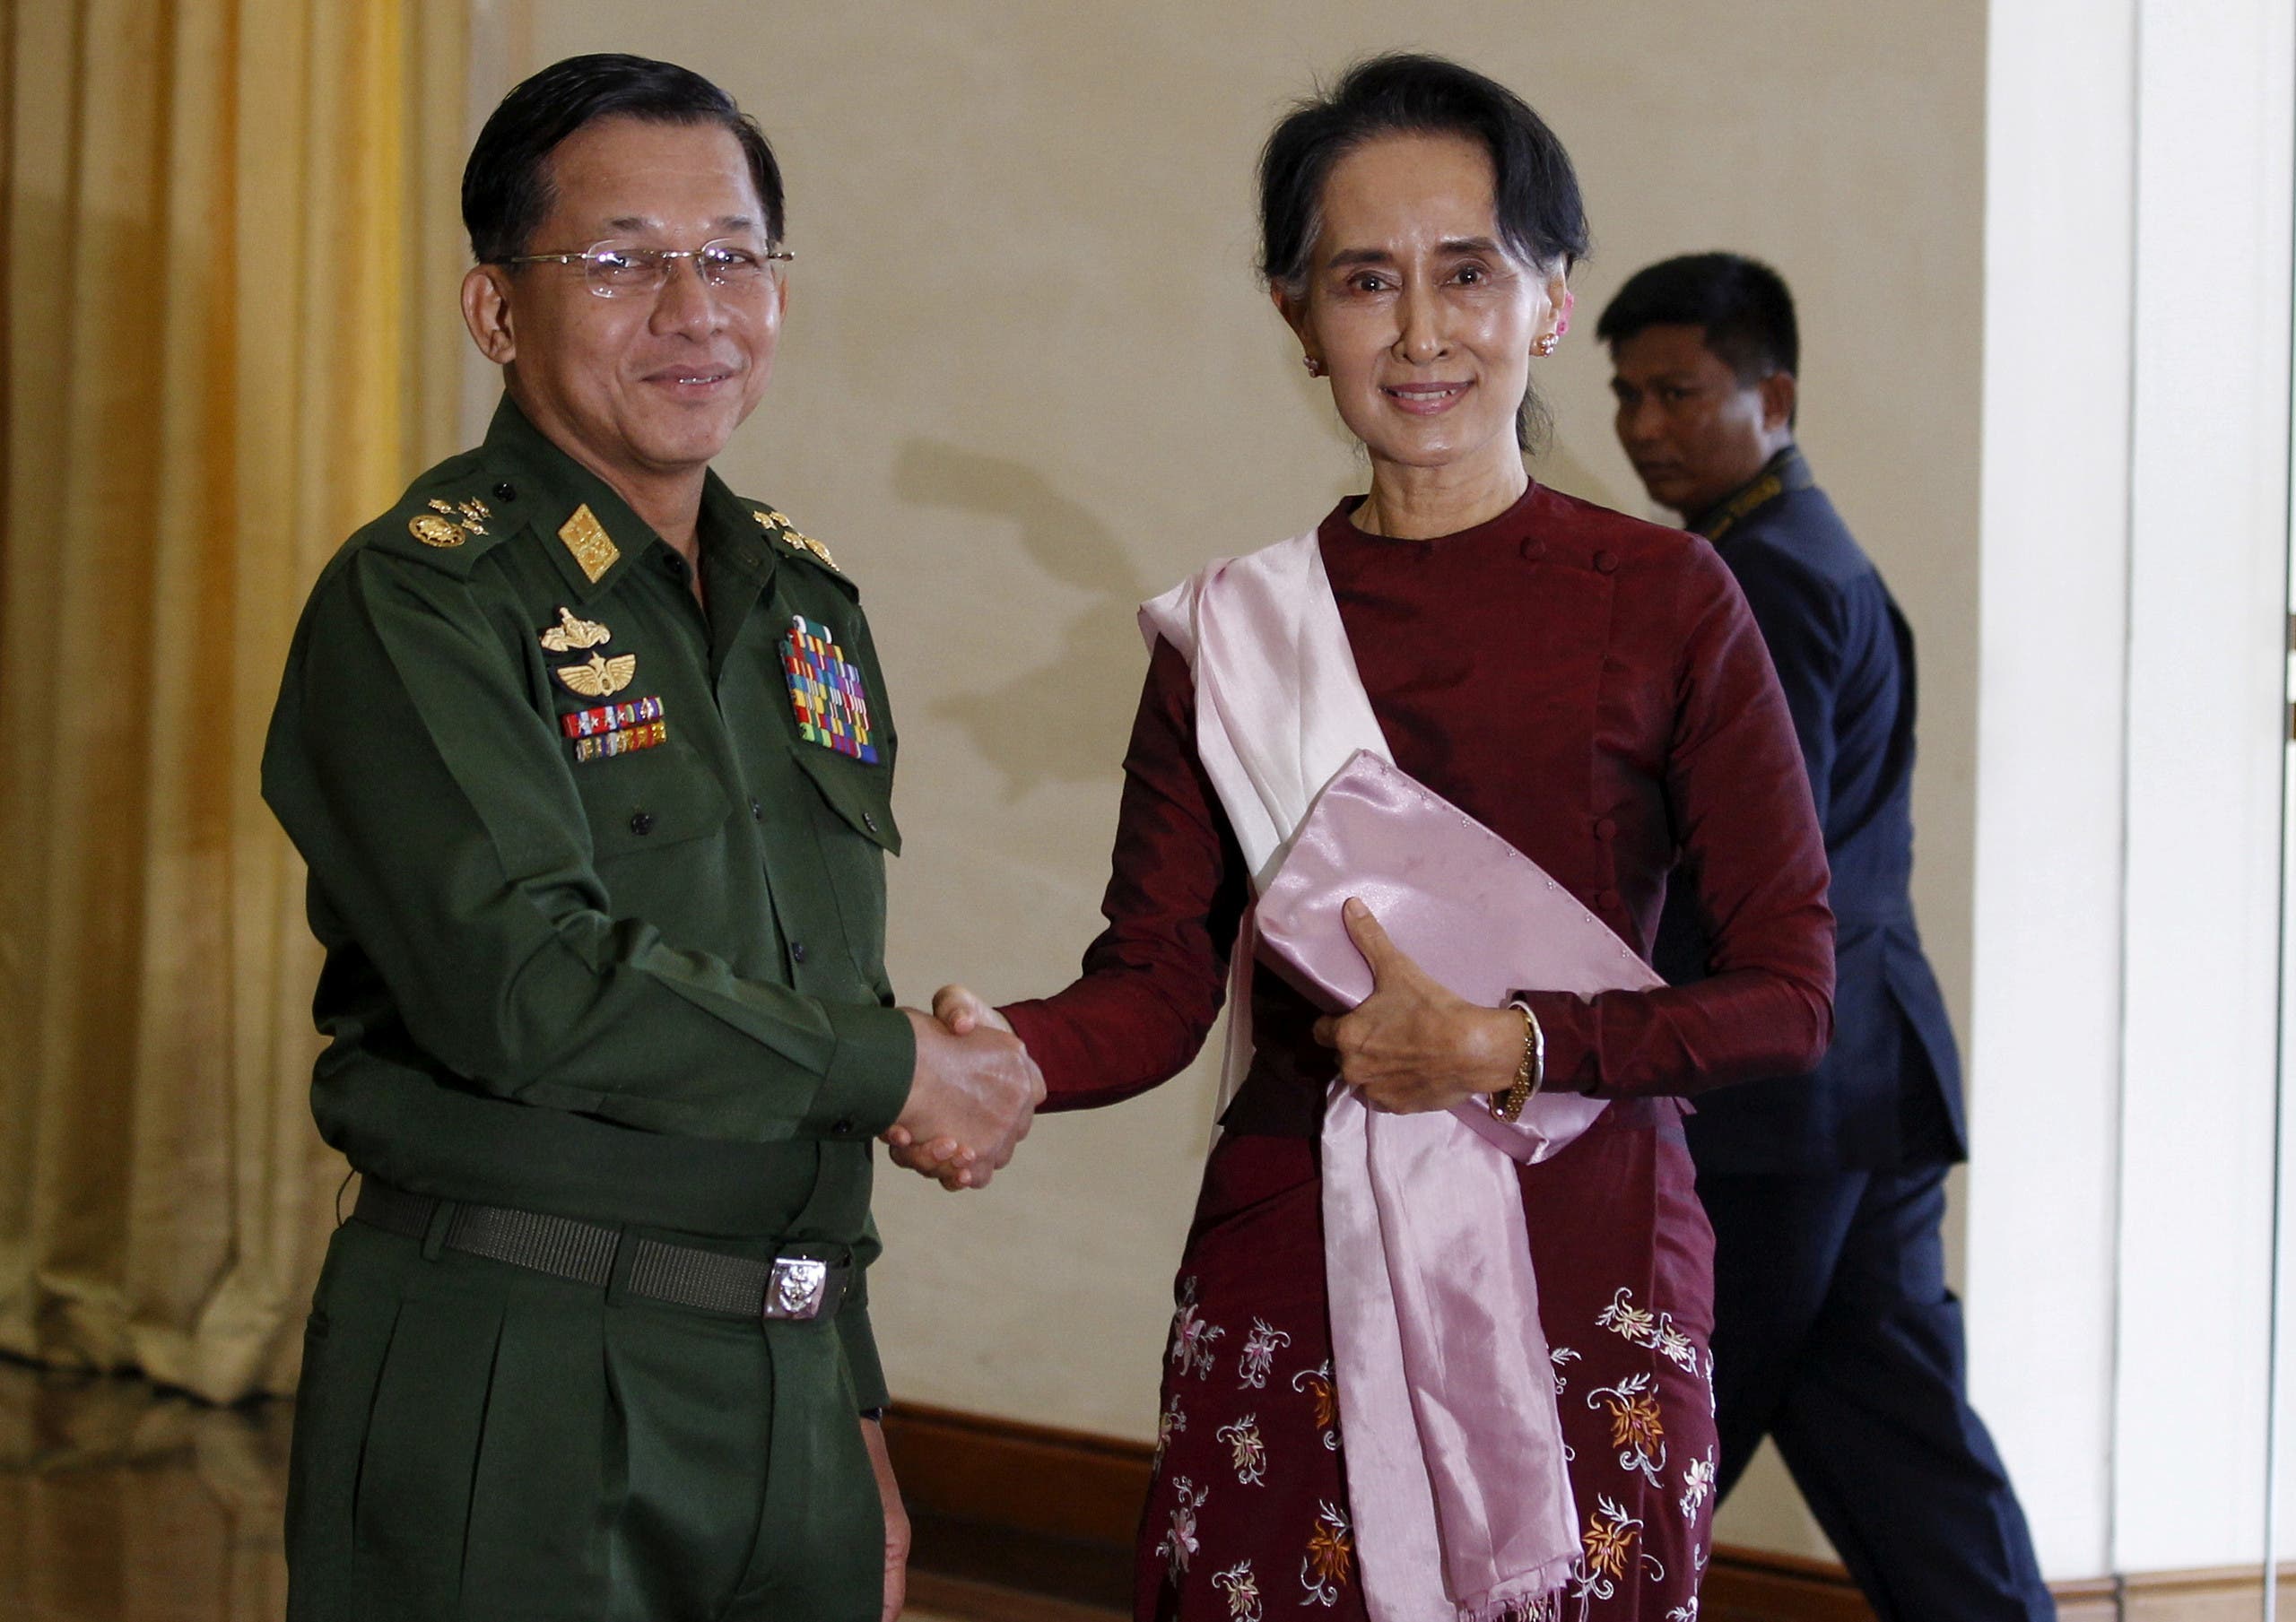 أونغ سان سوكي مع الجنرال مين أونغ هلاينغ في ديسمبر 2015